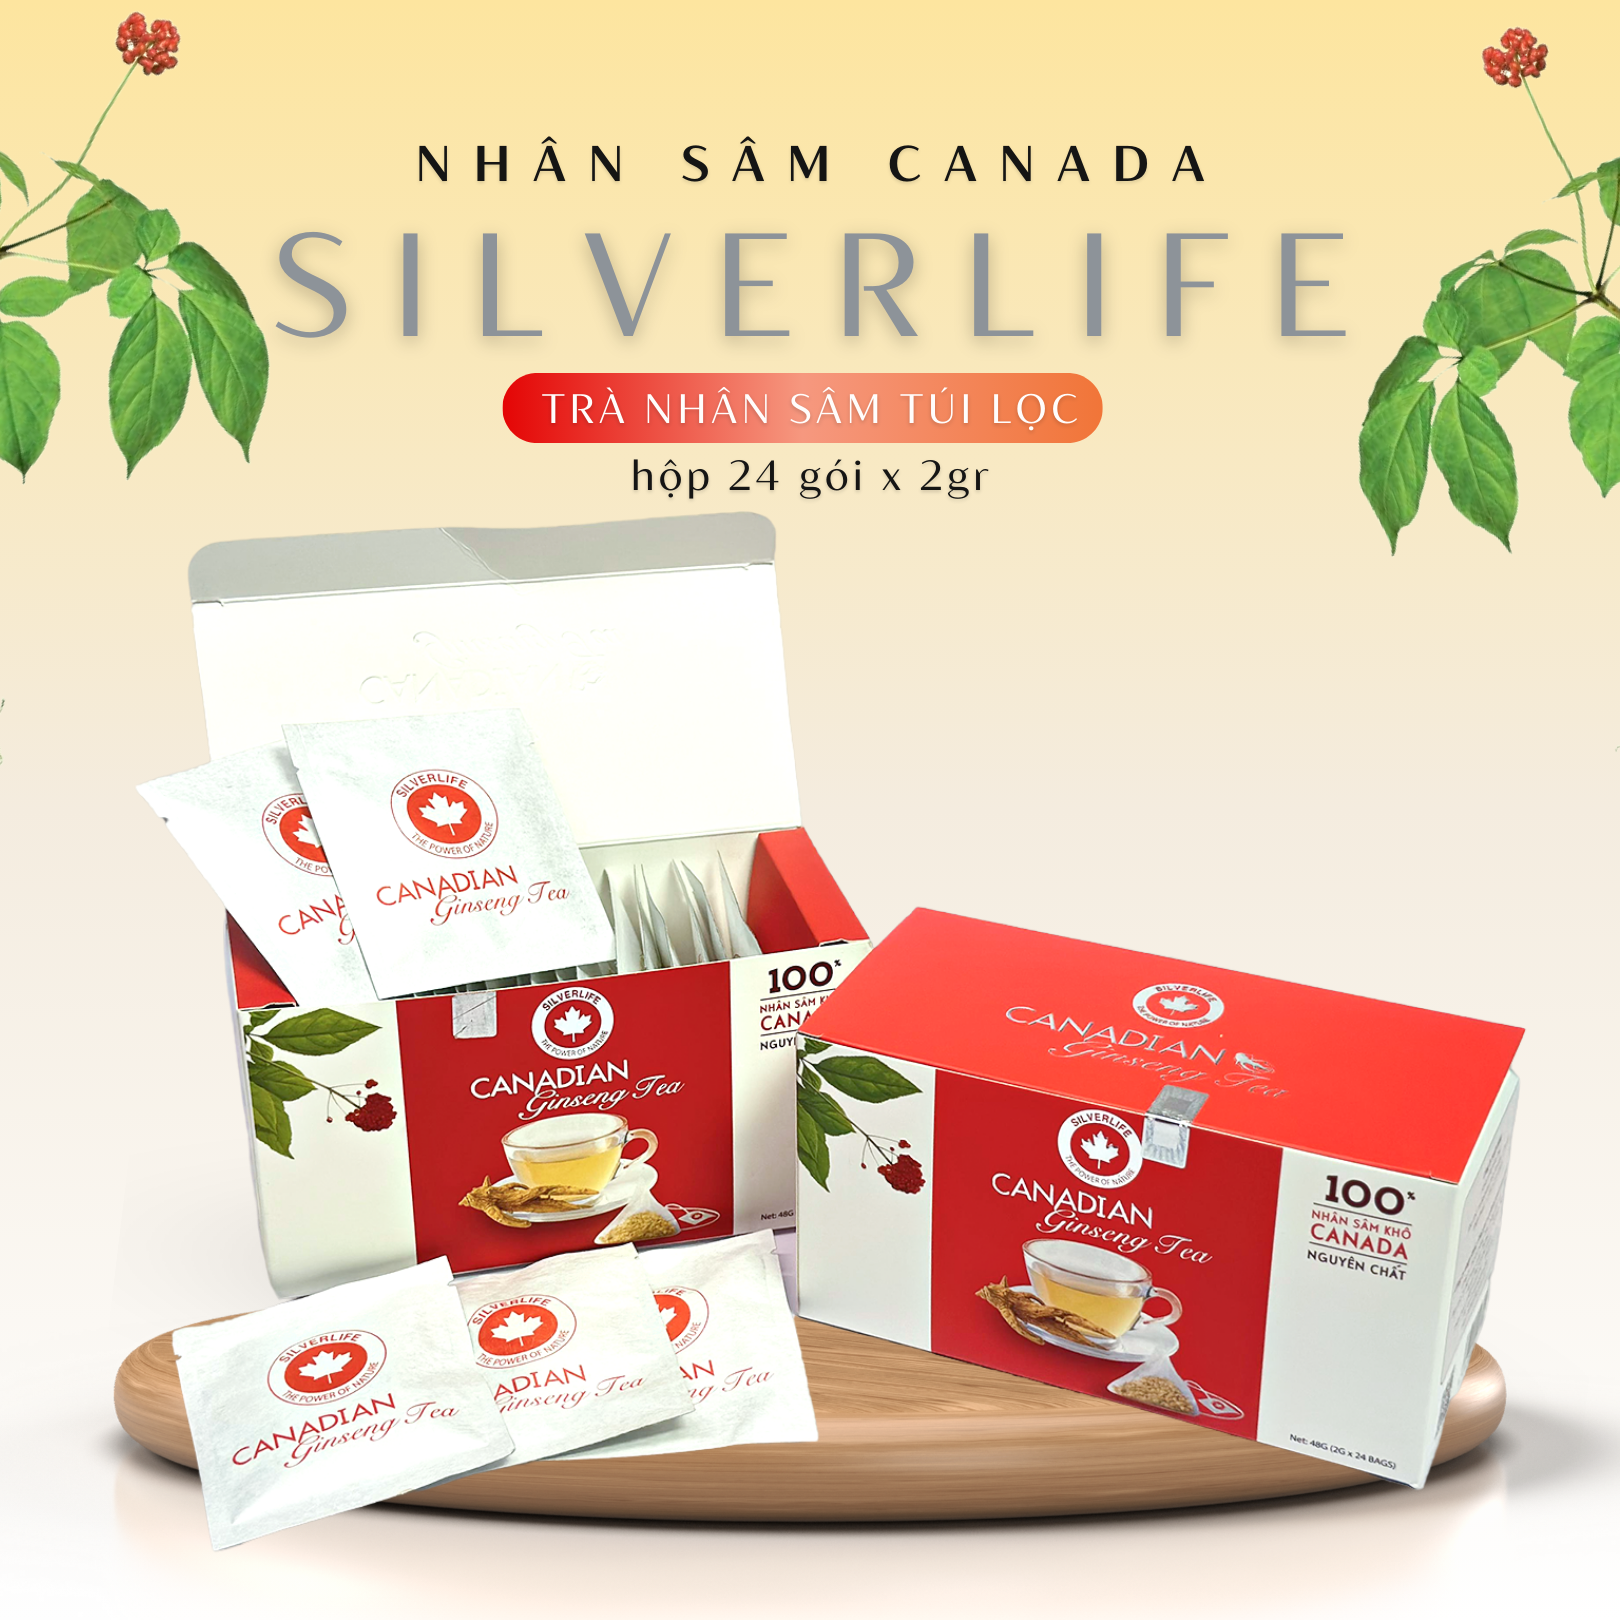 Trà nhân sâm Canada SilverLife hộp 24 gói 48g - 100% nhân sâm Canada tự nhiên nguyên chất - Giúp giải nhiệt, tăng cường sức khoẻ